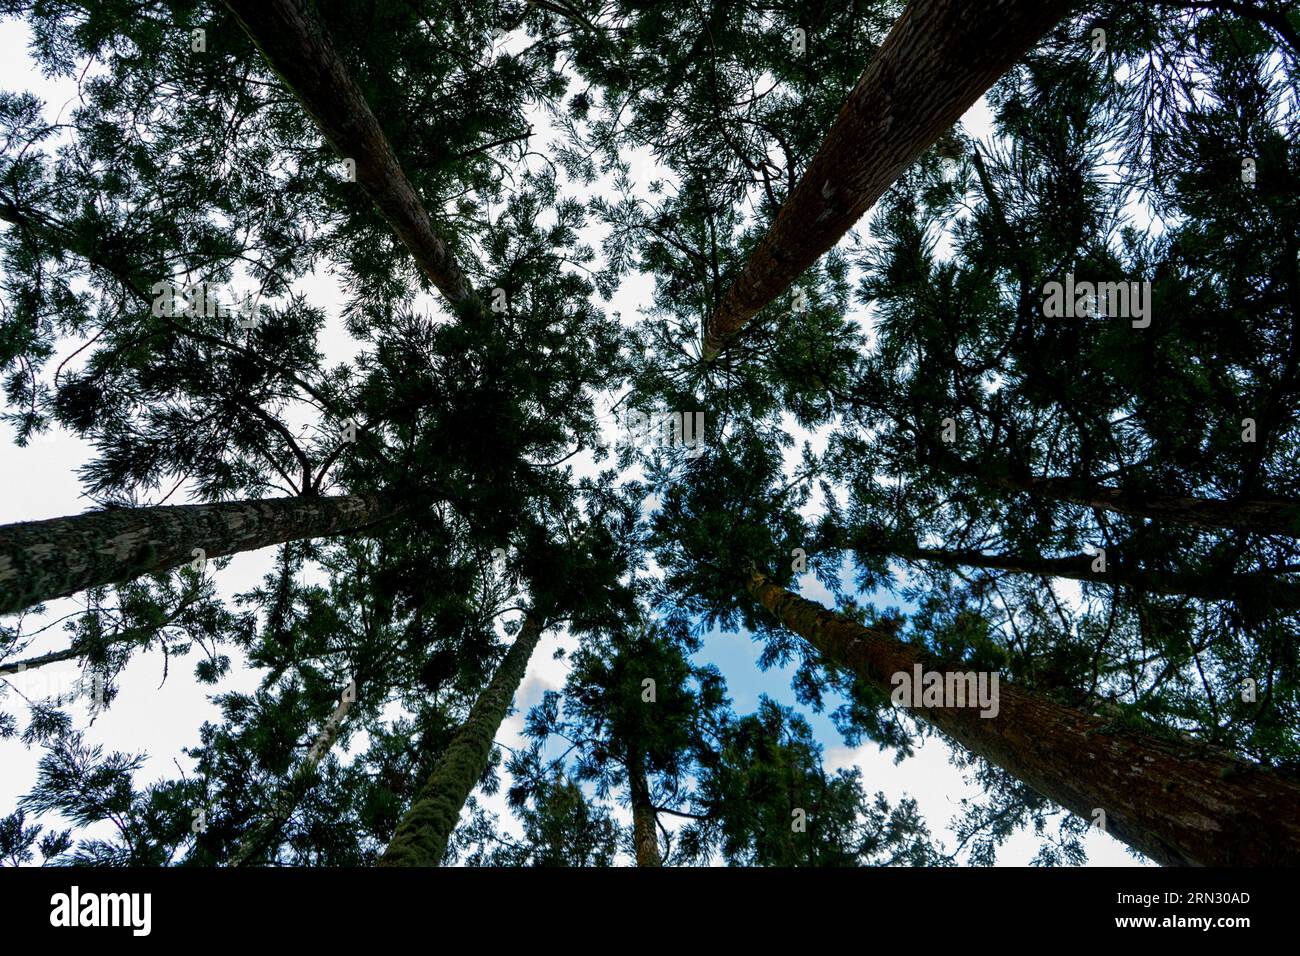 Questa fotografia è stata scattata nell'isola delle Azzorre nel mezzo della giungla con un obiettivo Sony A7III da 20 mm. Foto Stock